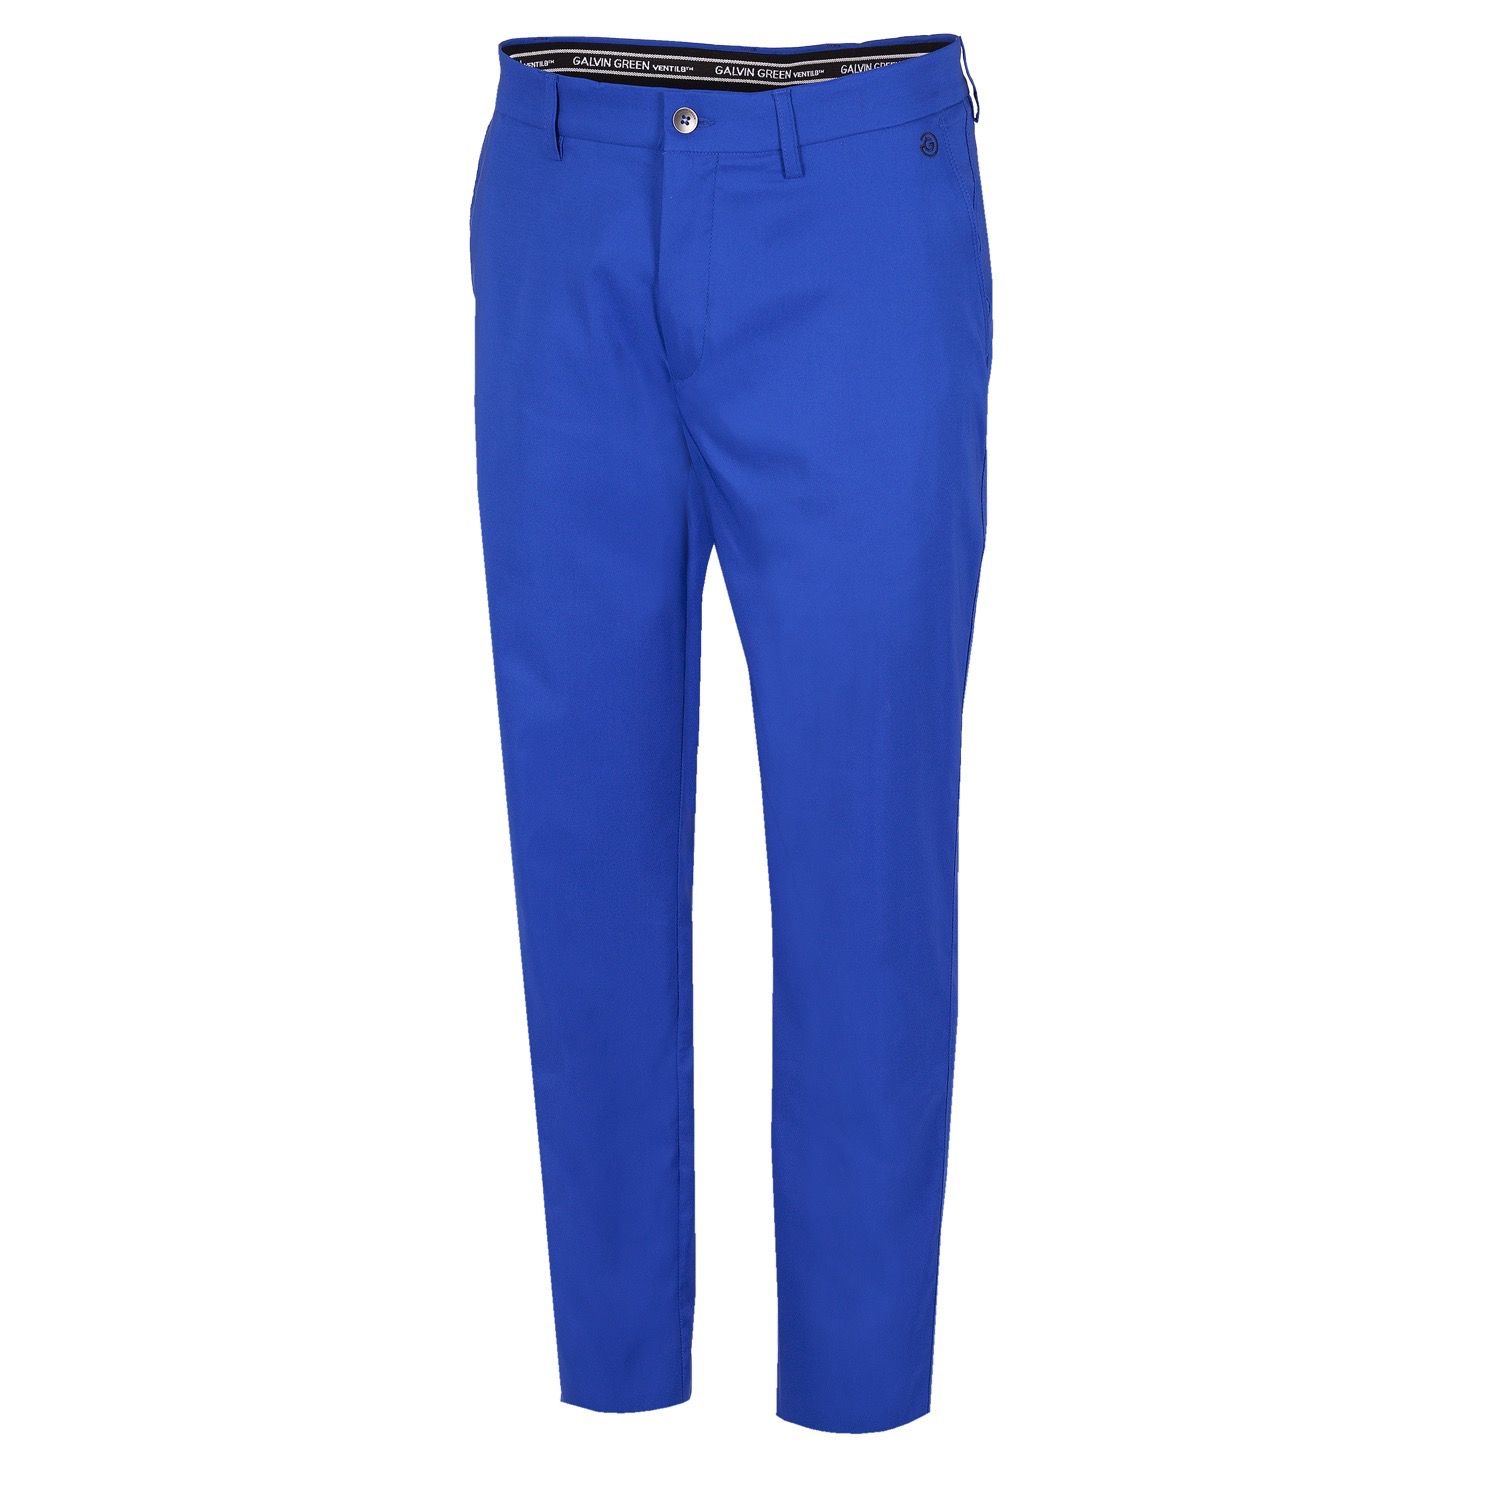 Galvin Green Noah Ventil8 Plus Trousers Surf Blue | Scottsdale Golf